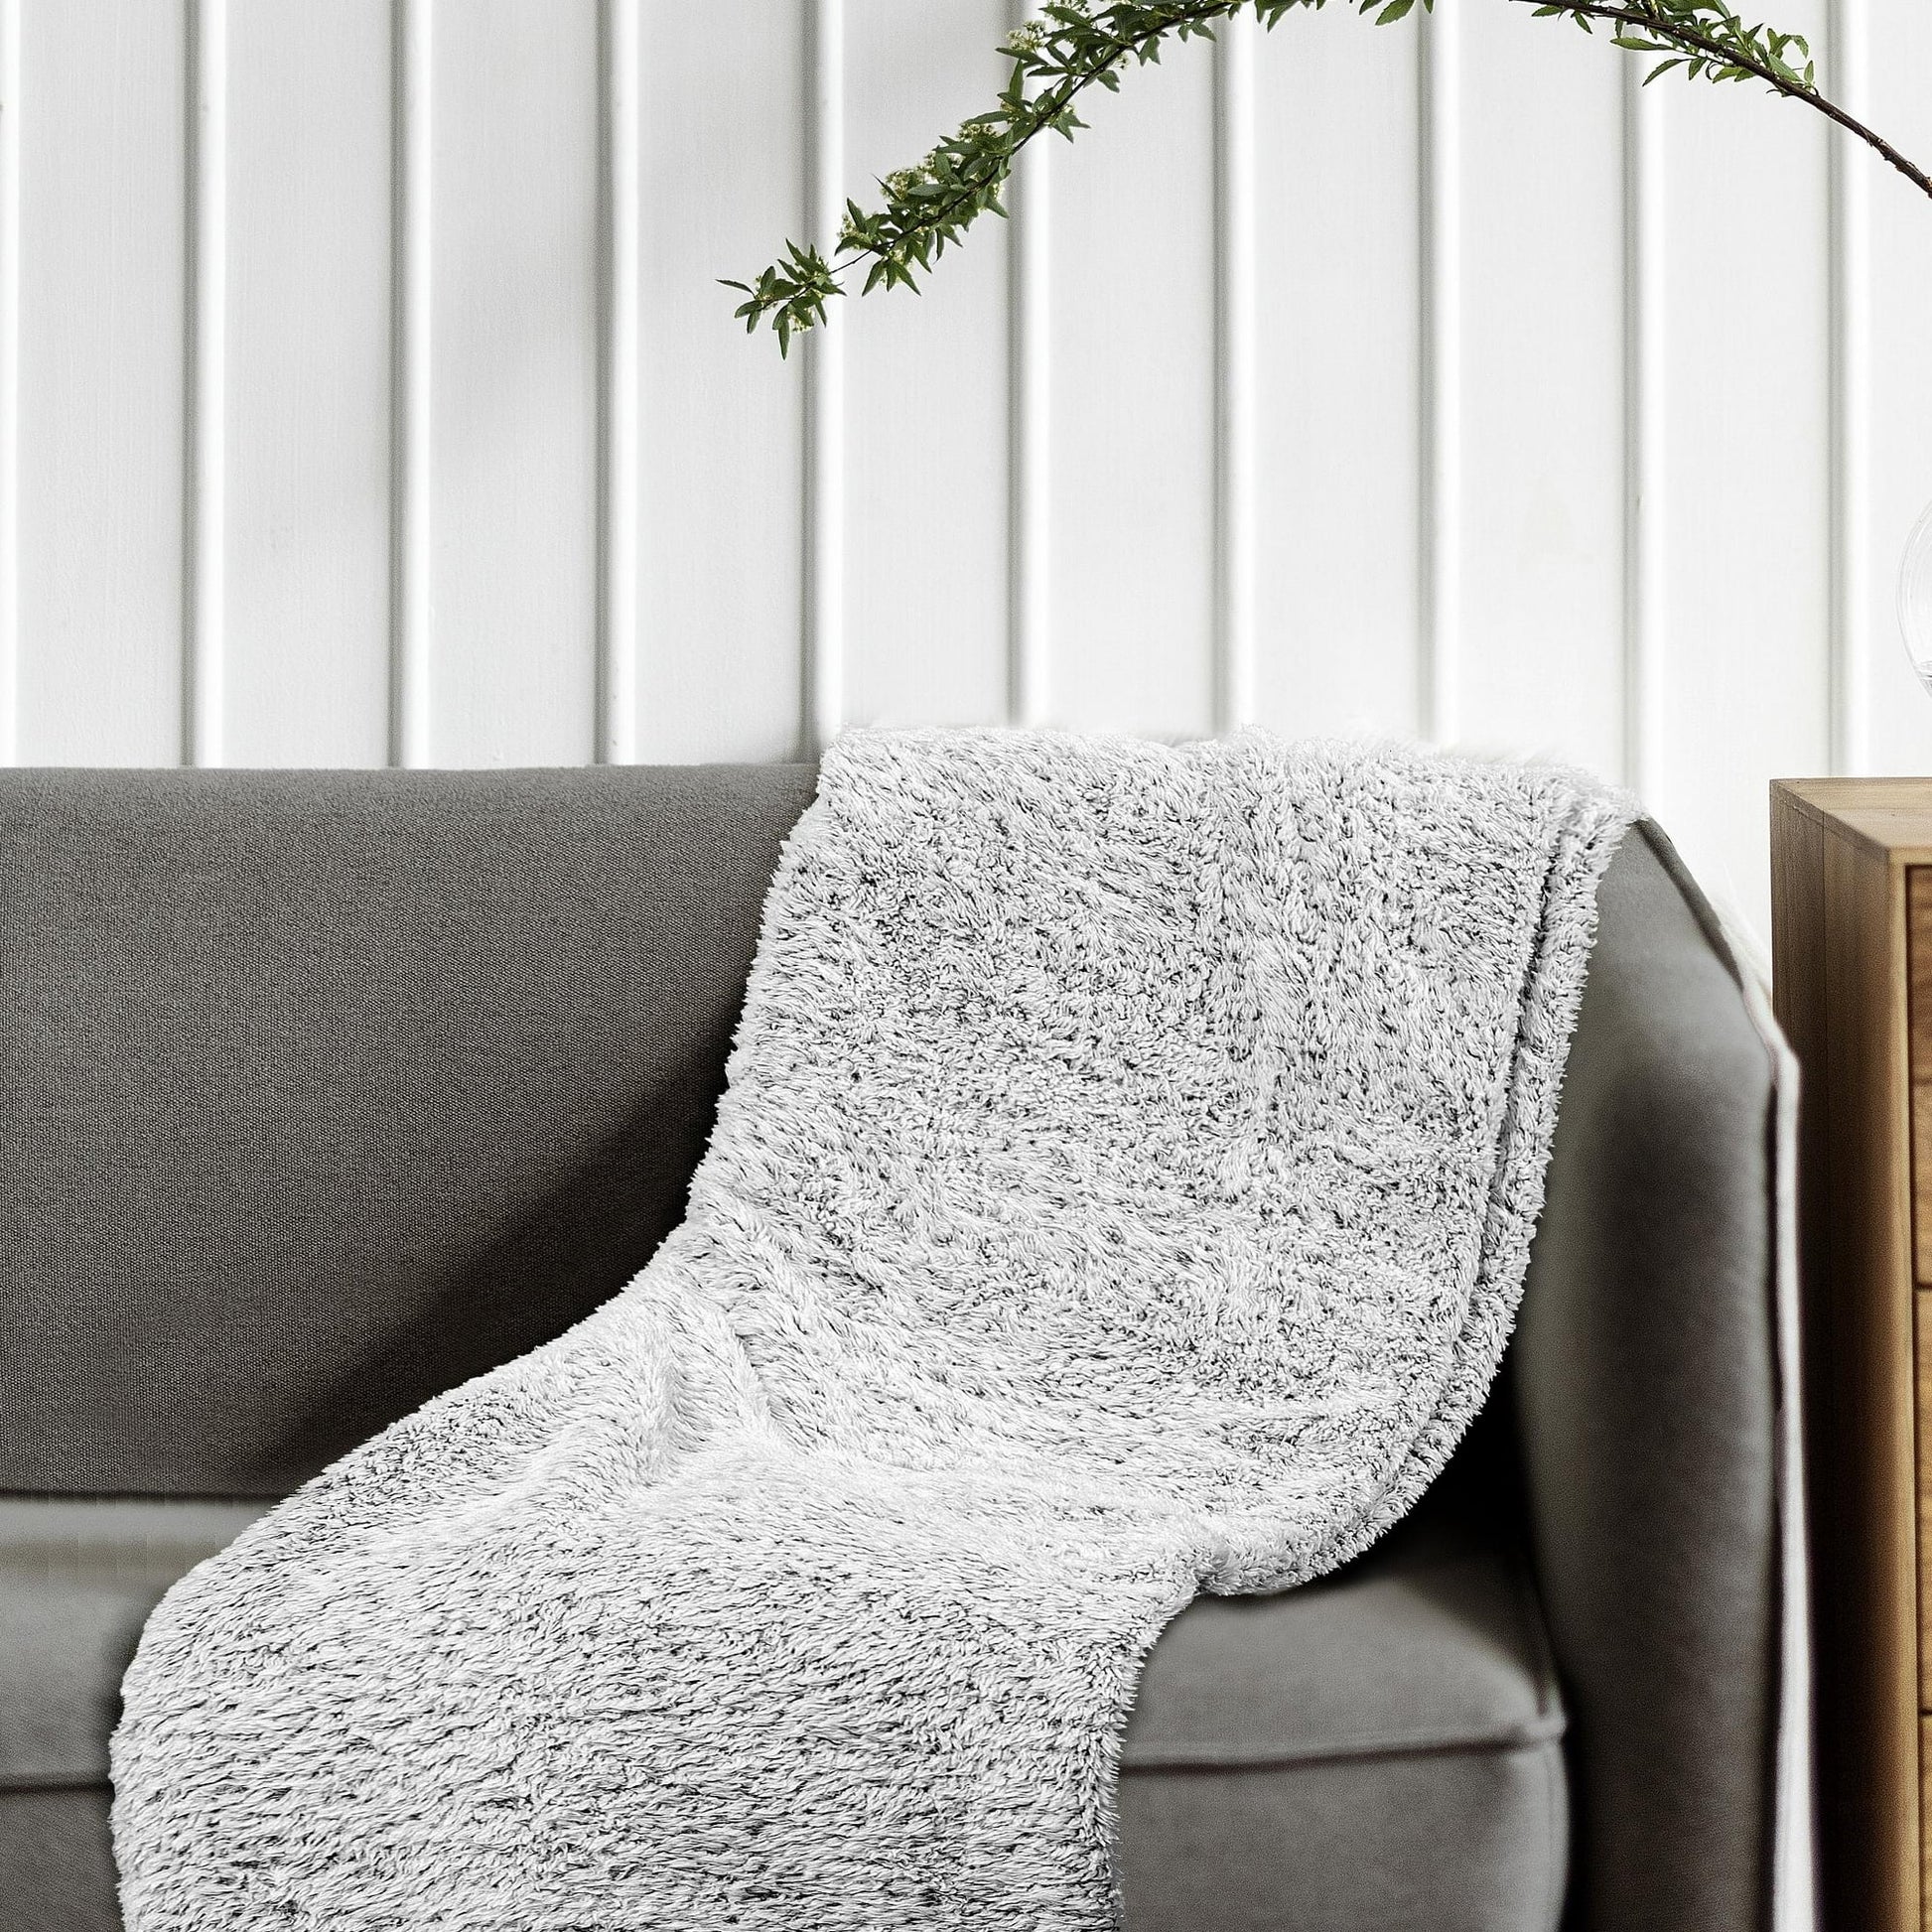 Throw blanket for living room decor